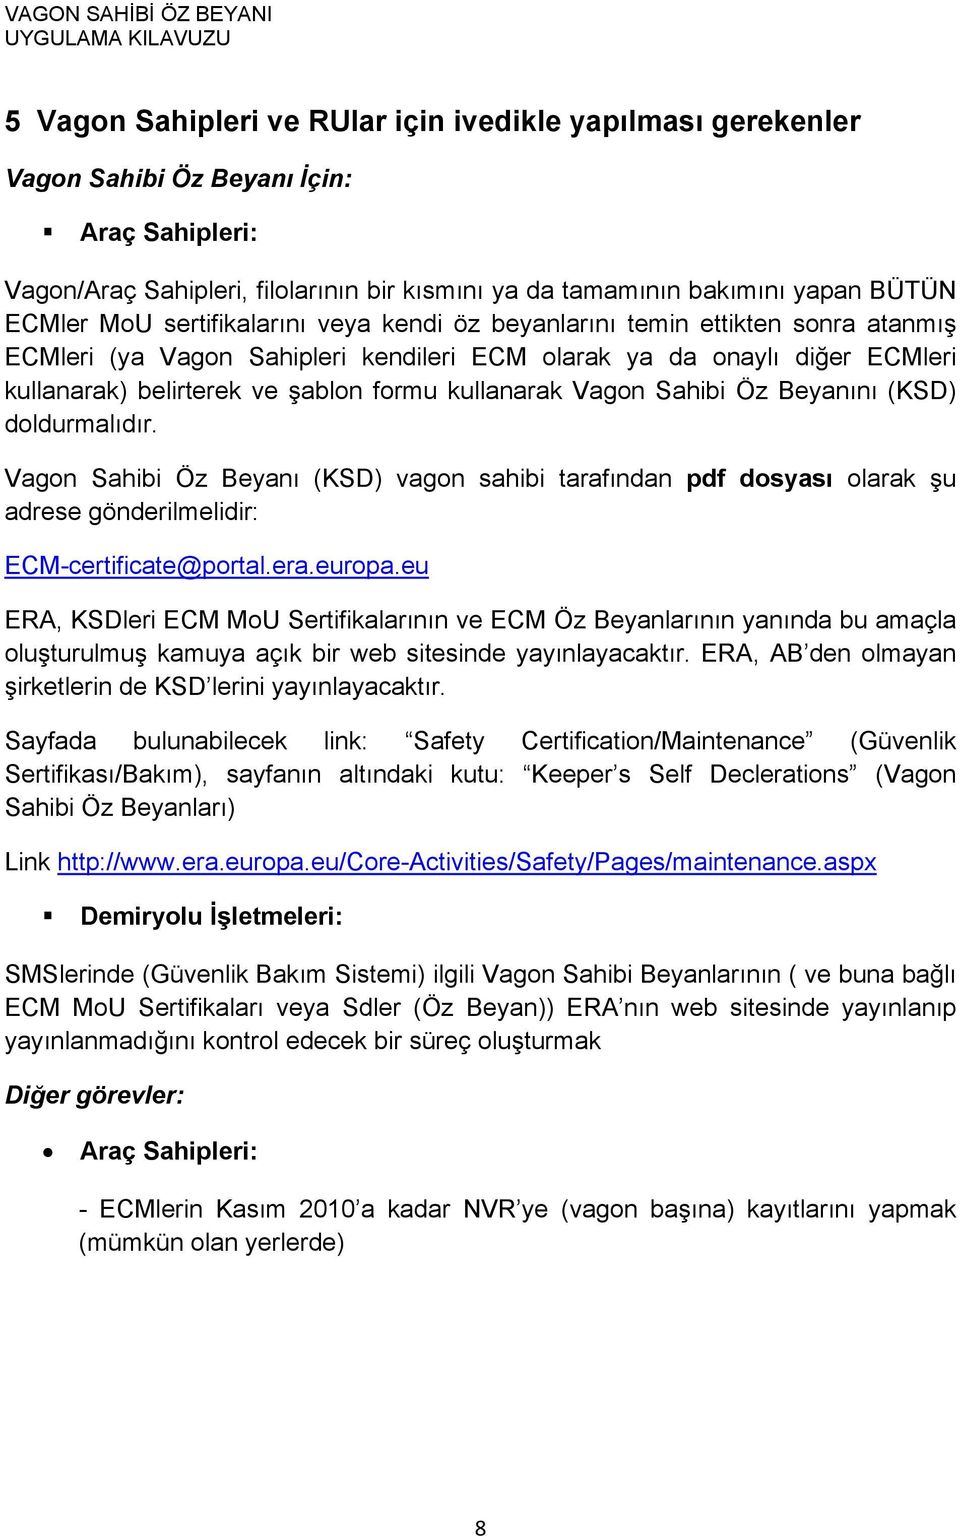 kullanarak Vagon Sahibi Öz Beyanını (KSD) doldurmalıdır. Vagon Sahibi Öz Beyanı (KSD) vagon sahibi tarafından pdf dosyası olarak şu adrese gönderilmelidir: ECM-certificate@portal.era.europa.